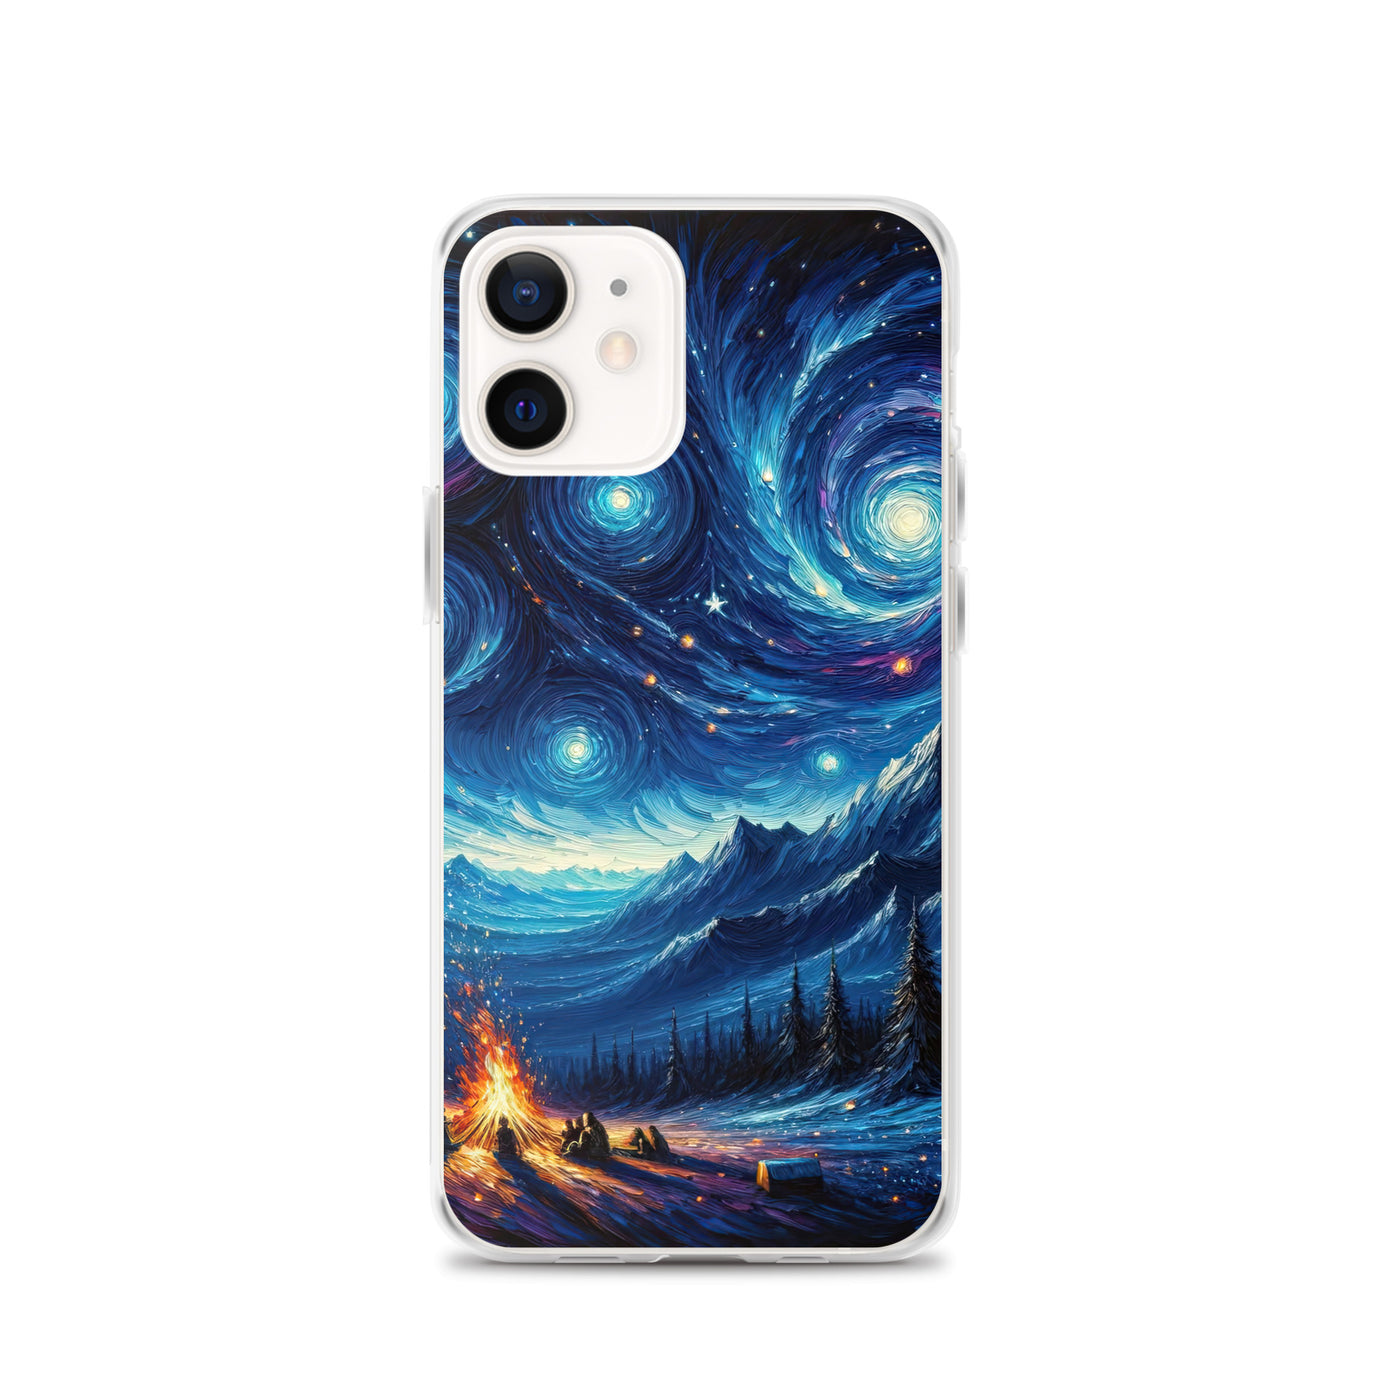 Sternennacht über den Alpen inspiriertes Ölgemälde, mystischer Nachthimmel in Blau - iPhone Schutzhülle (durchsichtig) camping xxx yyy zzz iPhone 12